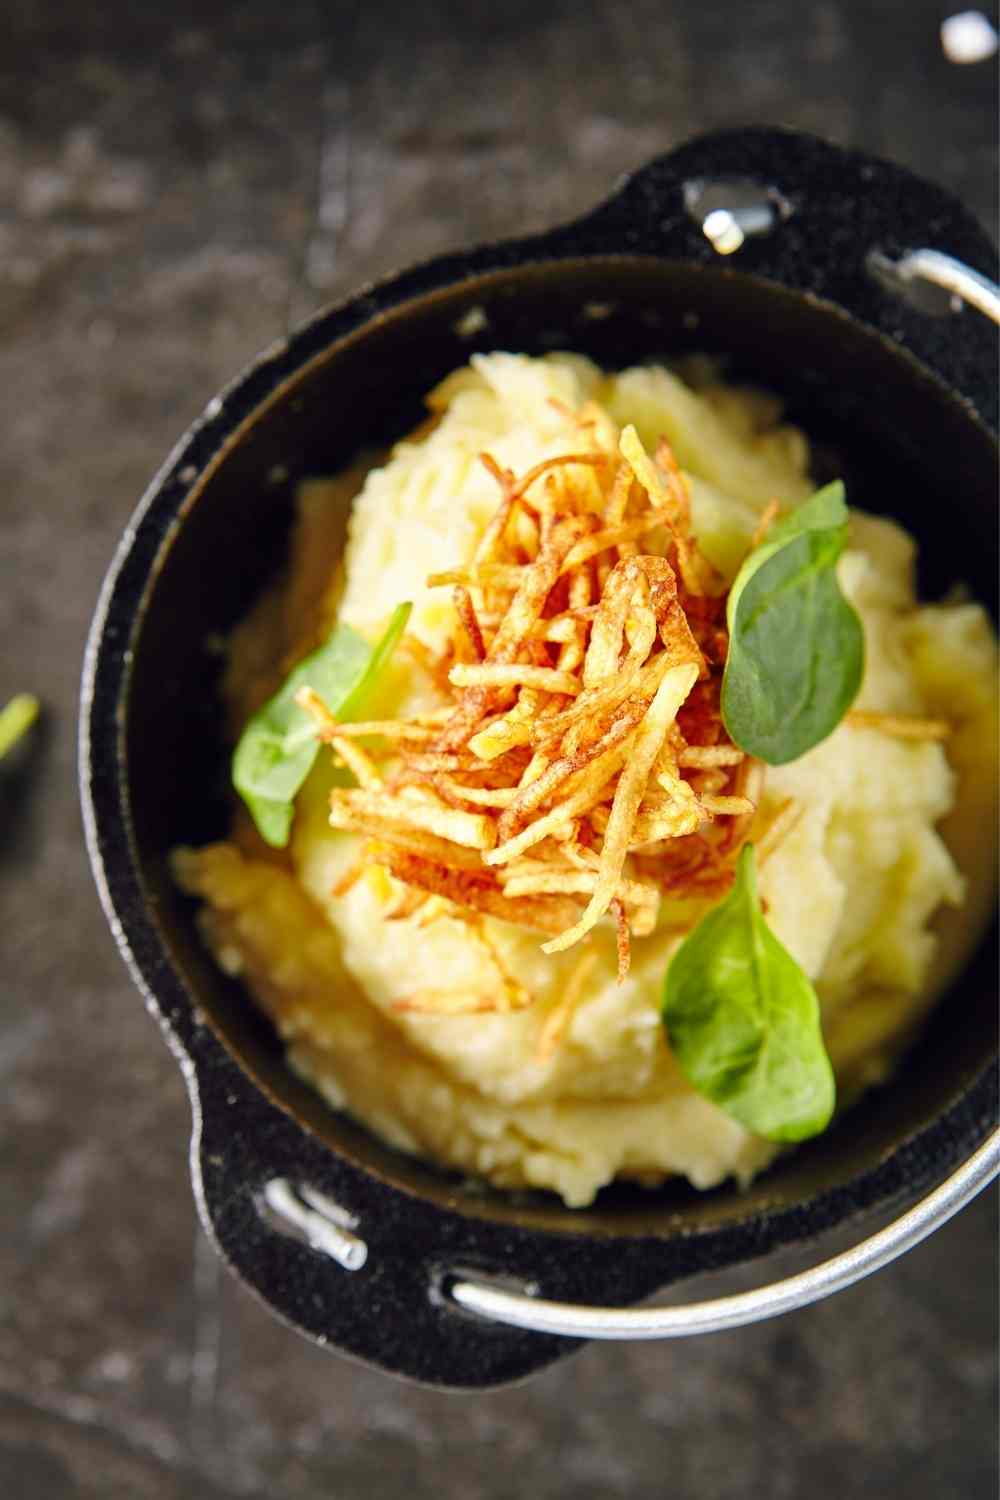 Roasted garlic mashed potatoes